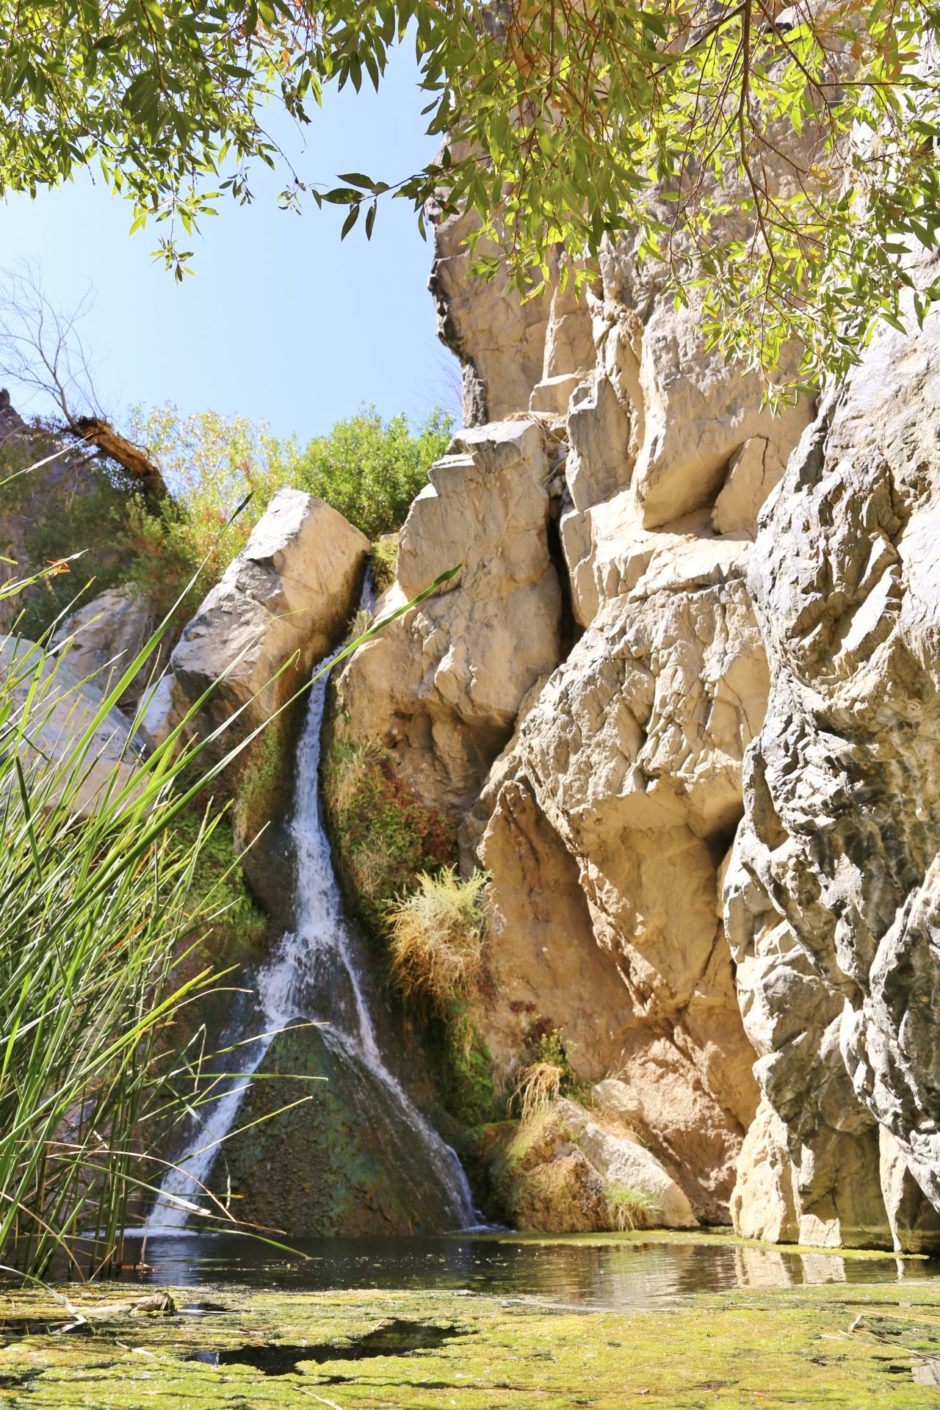 Darwin Falls - die unglaubliche Oase mitten in der Wüste! - Algen, Darwin Falls, Death Valley National Park, Felswand, Gestein, Gräser, Himmel, Kalifornien, malerisch, Oase, traumhaft, Wasser, Wasserfall - (Panamint Springs, Darwin, California, Vereinigte Staaten)